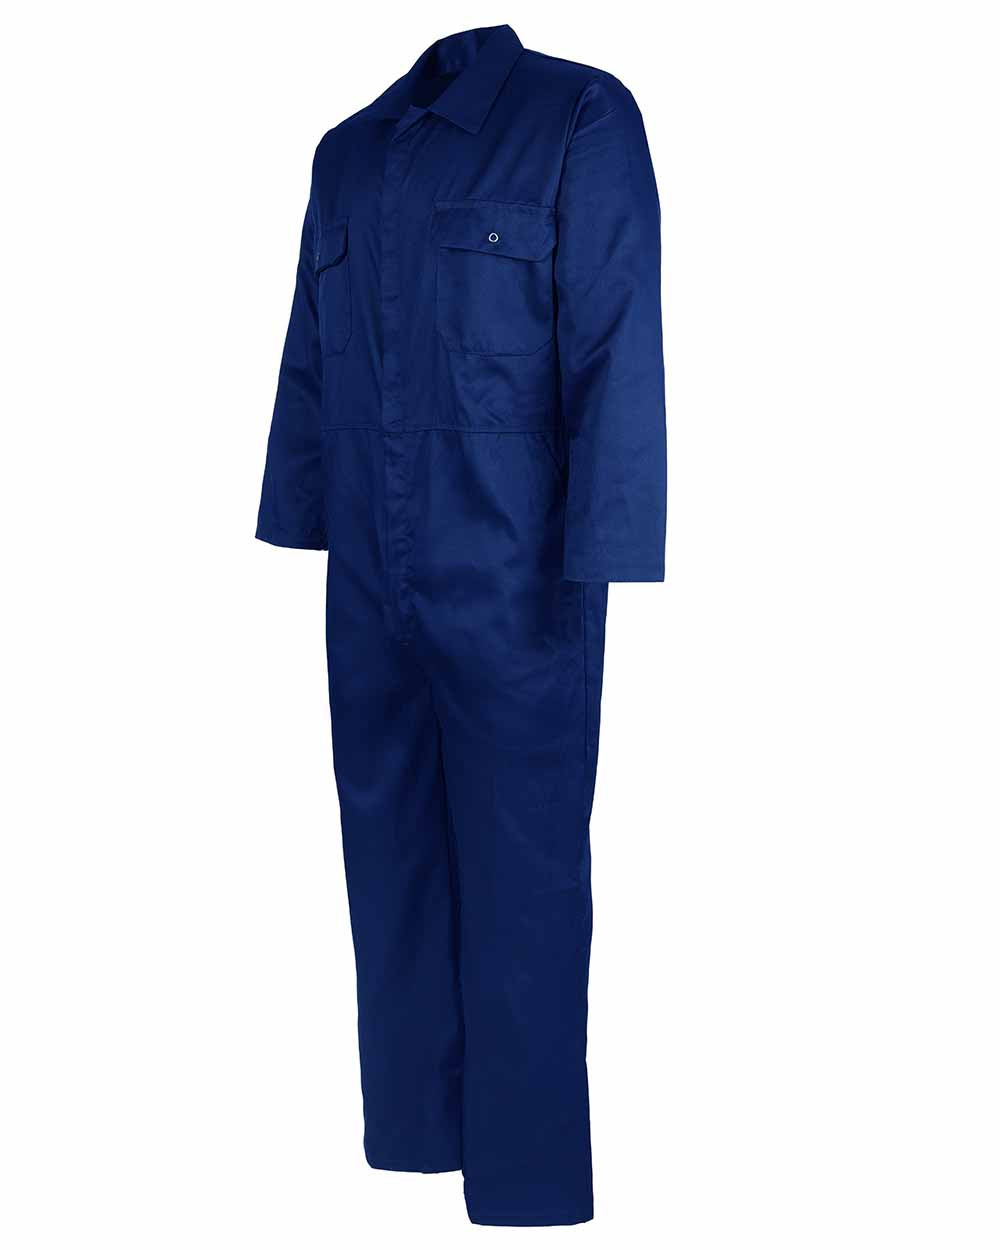 Press stud pockets Fort Workforce Economy Boilersuit in Royal Blue 